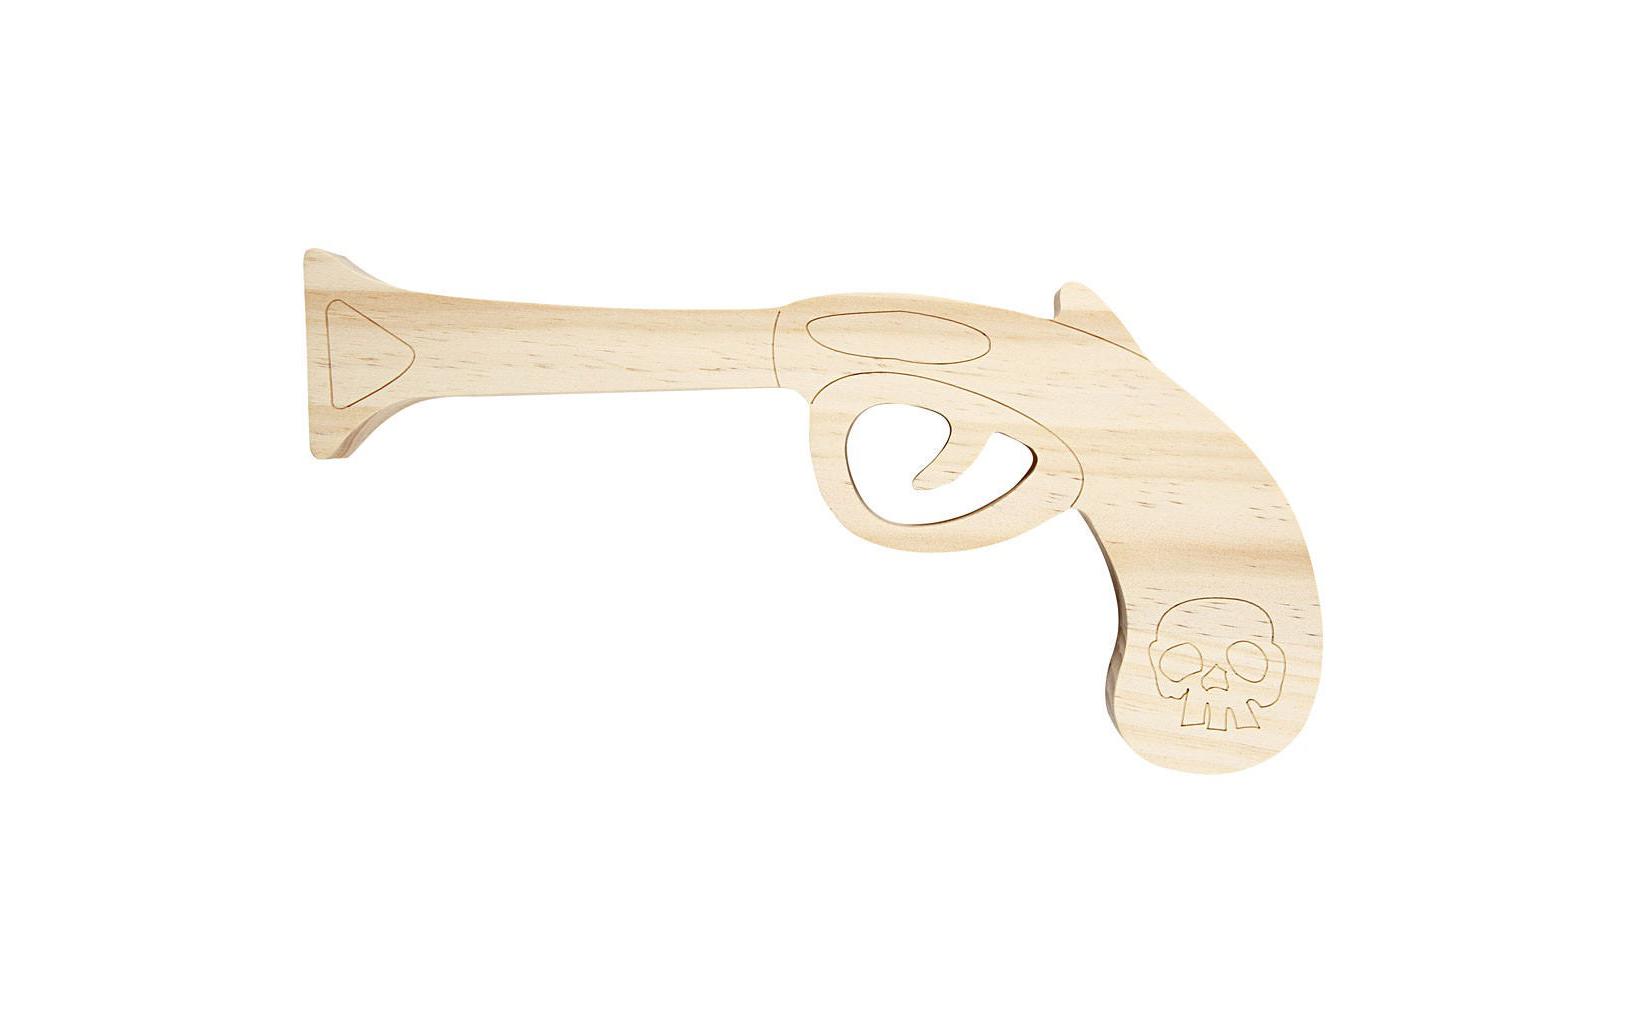 Holz Pistole, L 20,5 cm, H 9,5 cm, Kiefernholz, 1Stck, Stärke: 2 cm